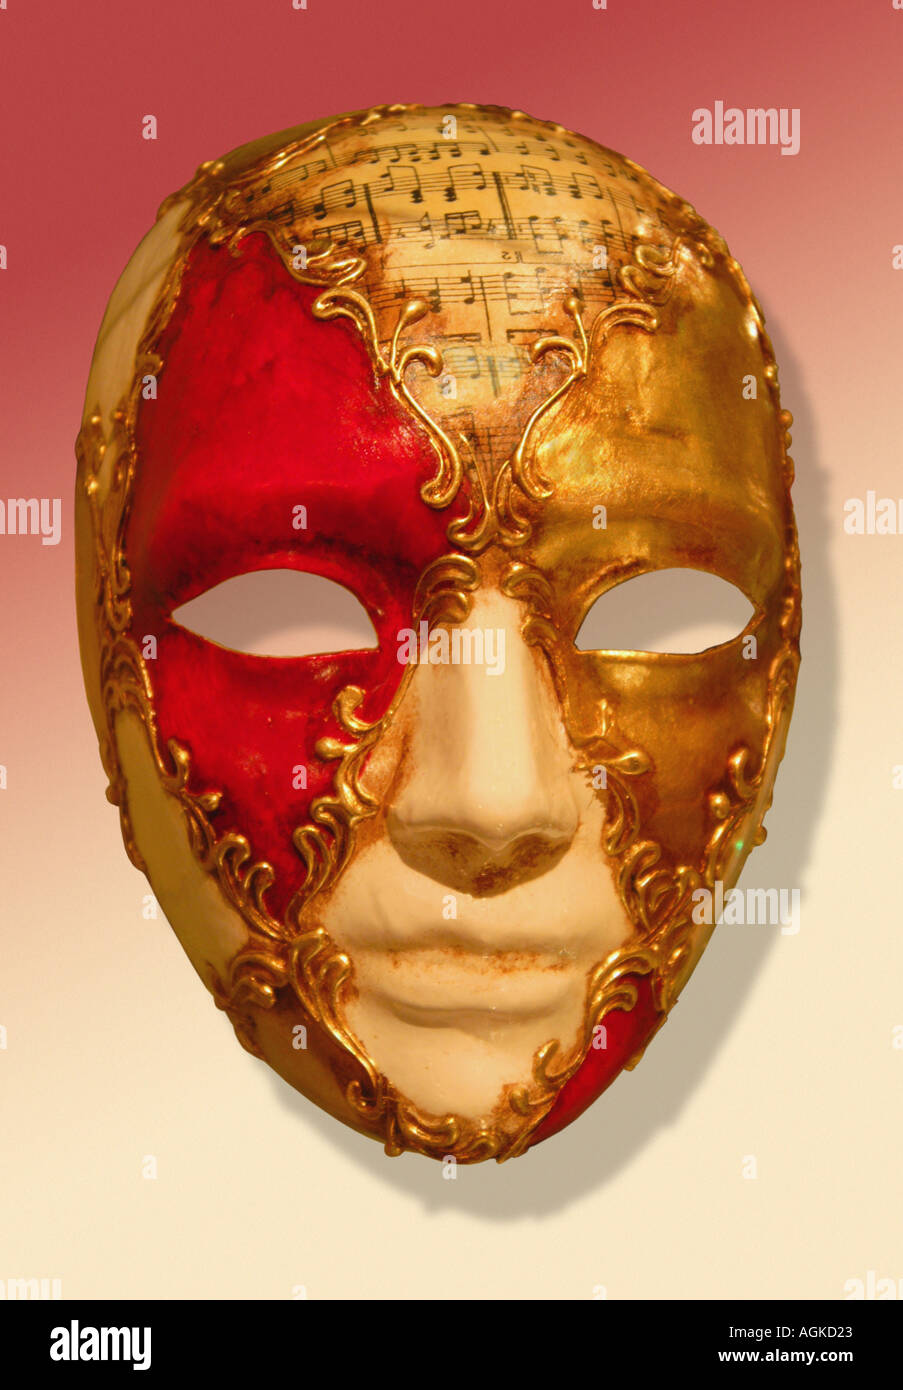 Venetian carnival papier mâché papier mache mask Stock Photo - Alamy